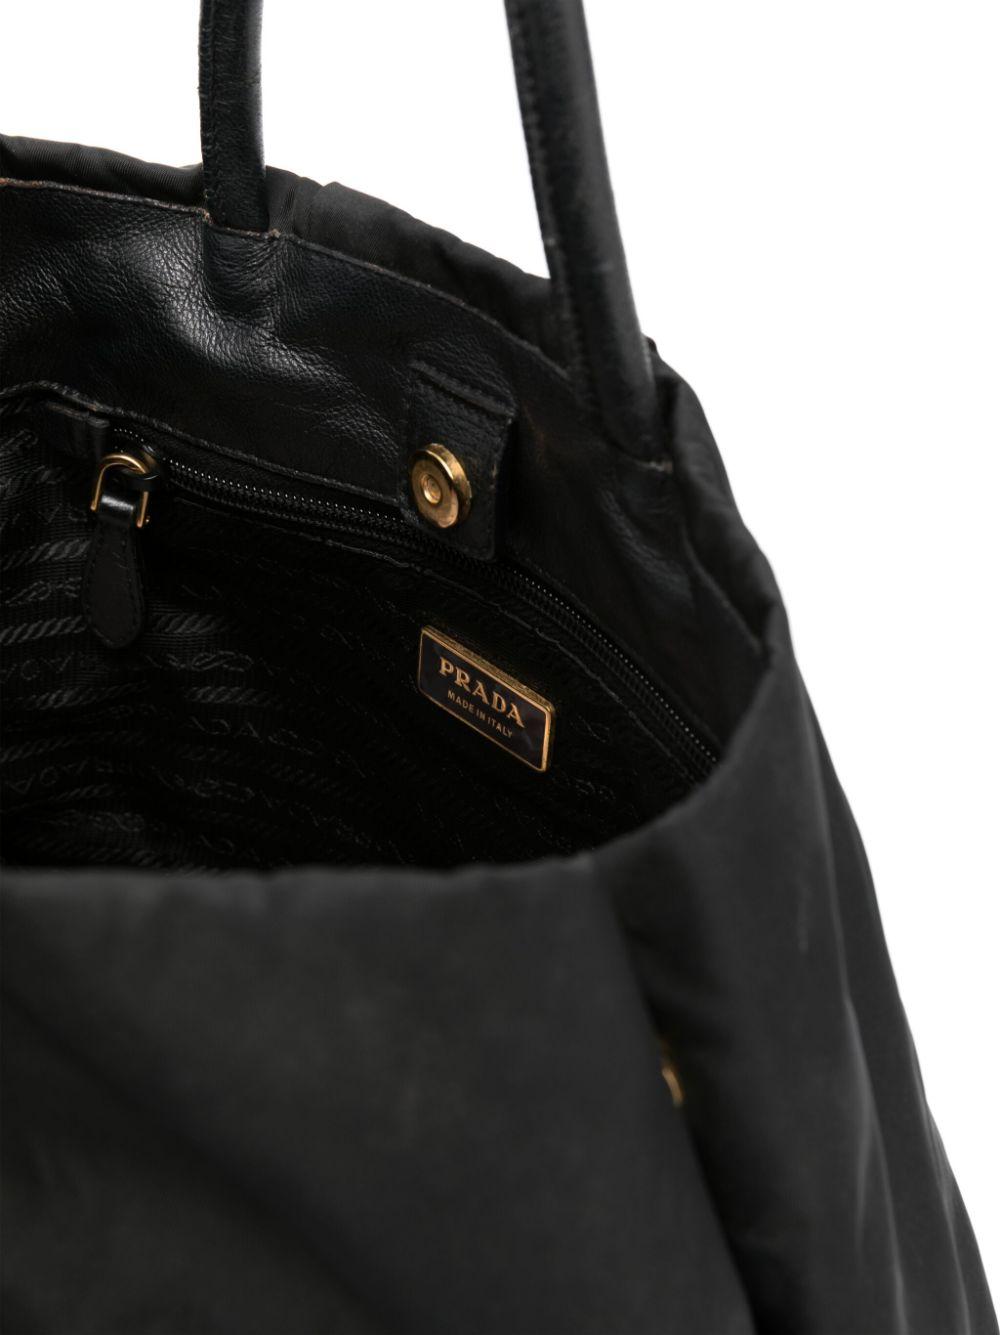 Prada Black Nylon Tote Bag 1